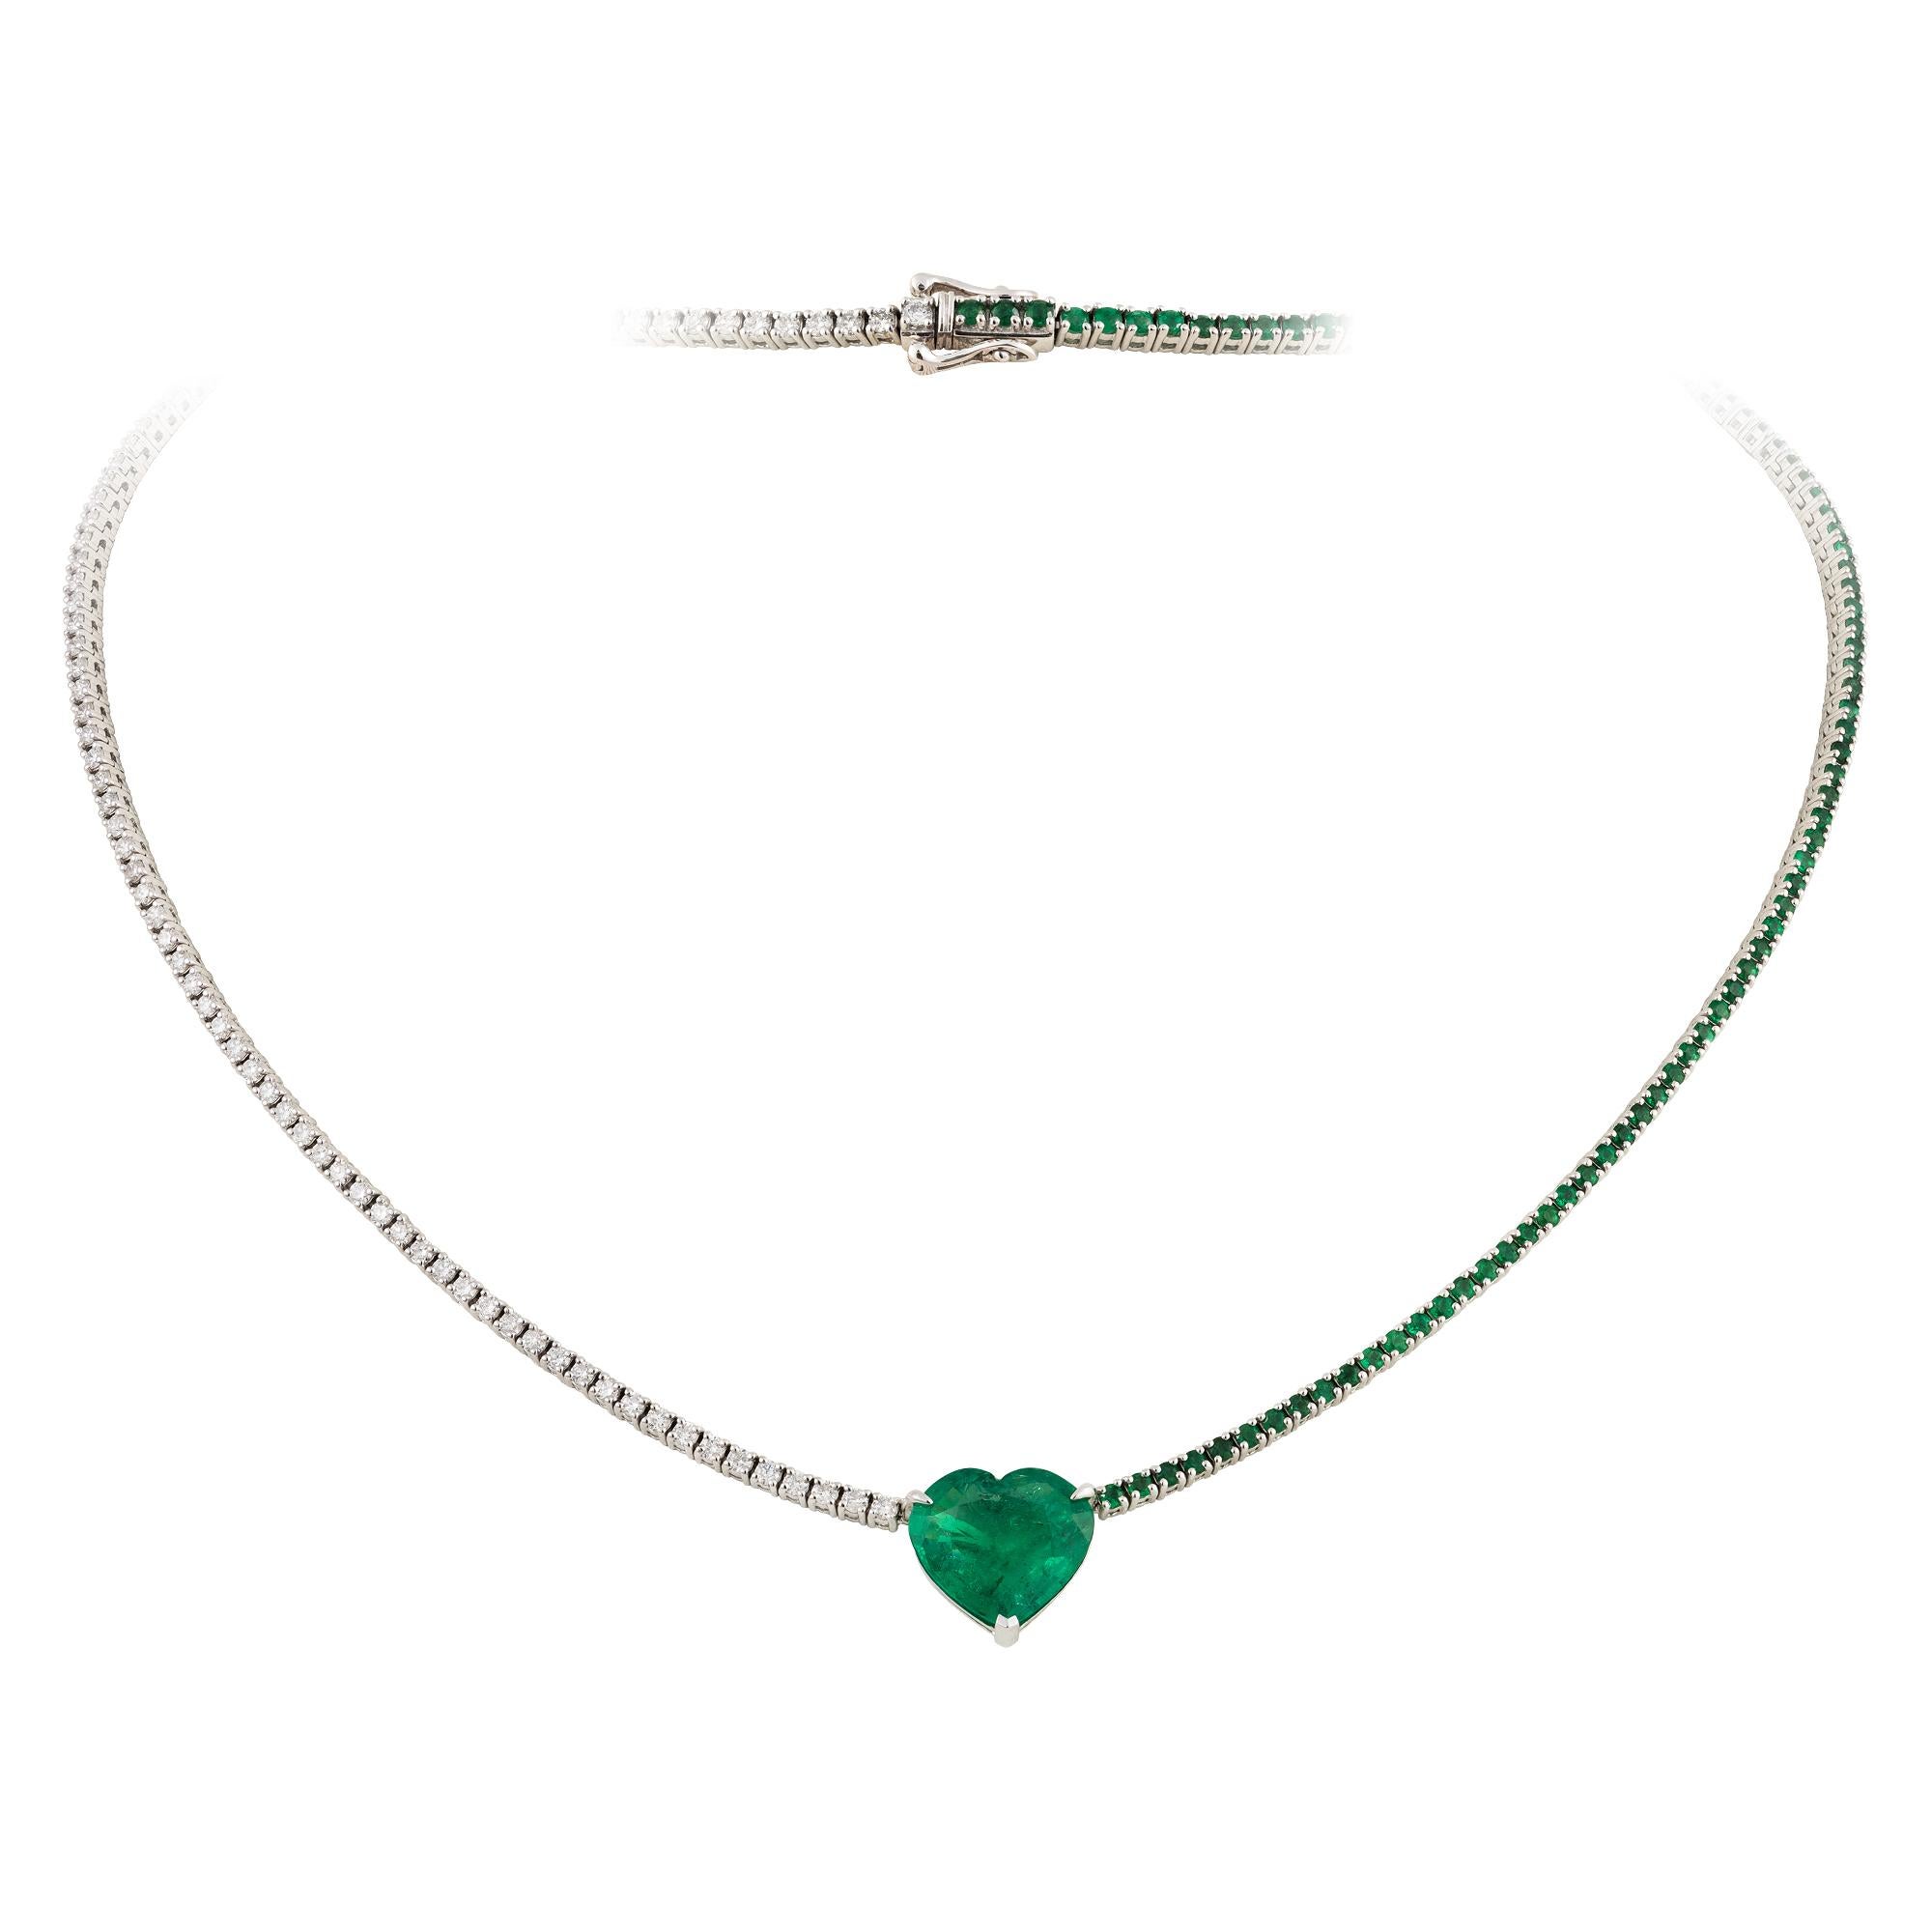 Eine seltene 18KT Weißgold Smaragd-Diamant-Halskette. Die Halskette besteht aus einem fein gefassten, glitzernden, wunderschönen, herzförmigen Smaragd, der mit Diamanten und Smaragden verziert ist!!! Die Smaragde und Diamanten sind von exquisiter